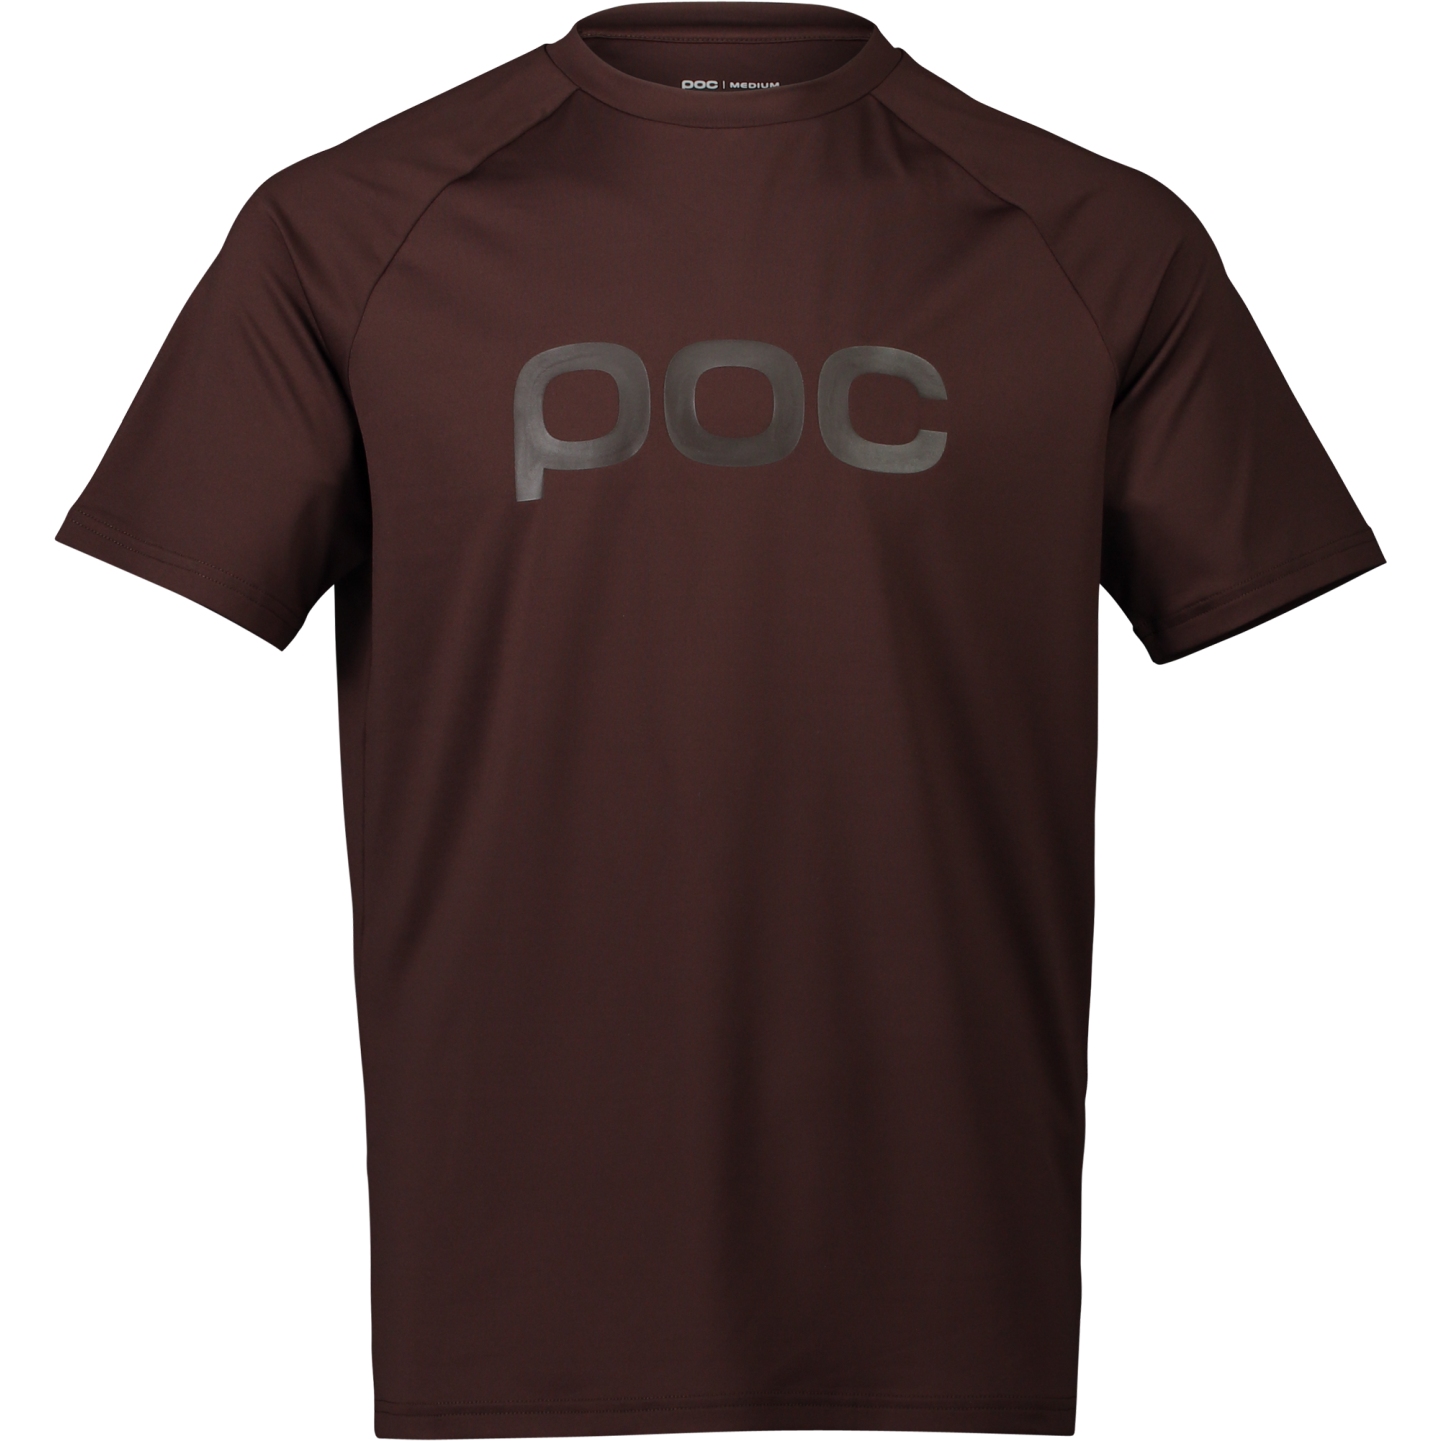 Produktbild von POC Reform Enduro T-Shirt Herren - 1816 Axinite Brown